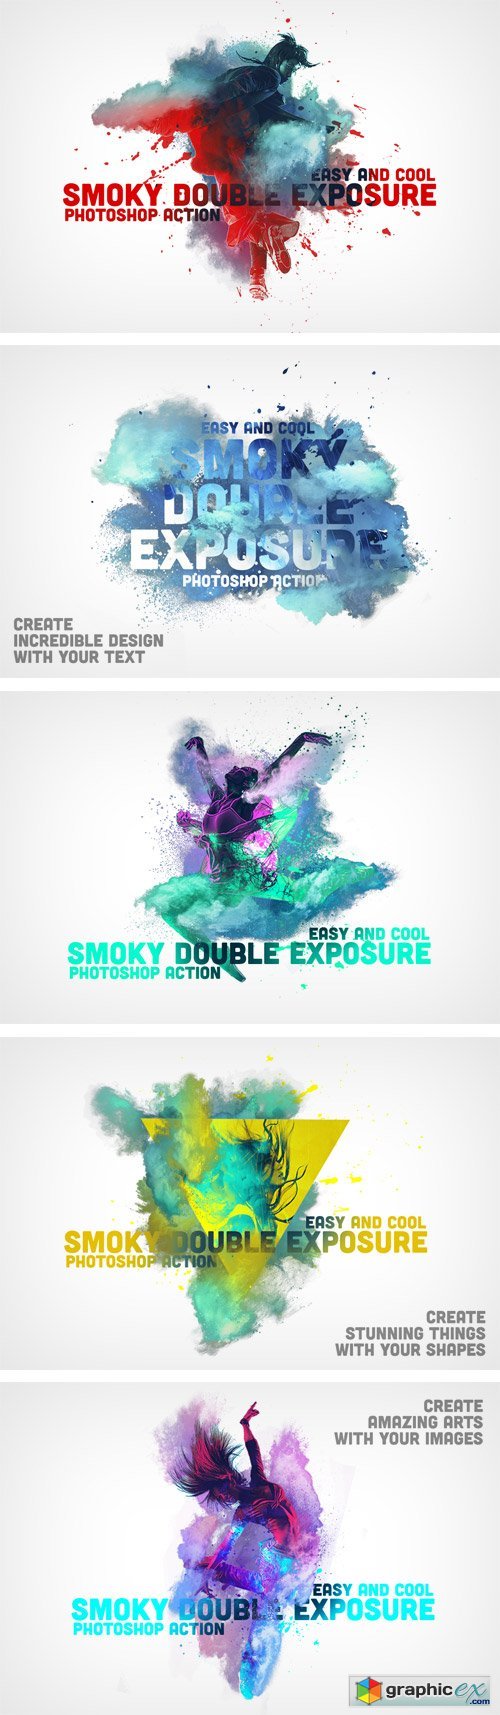 Smoky Double Exposure